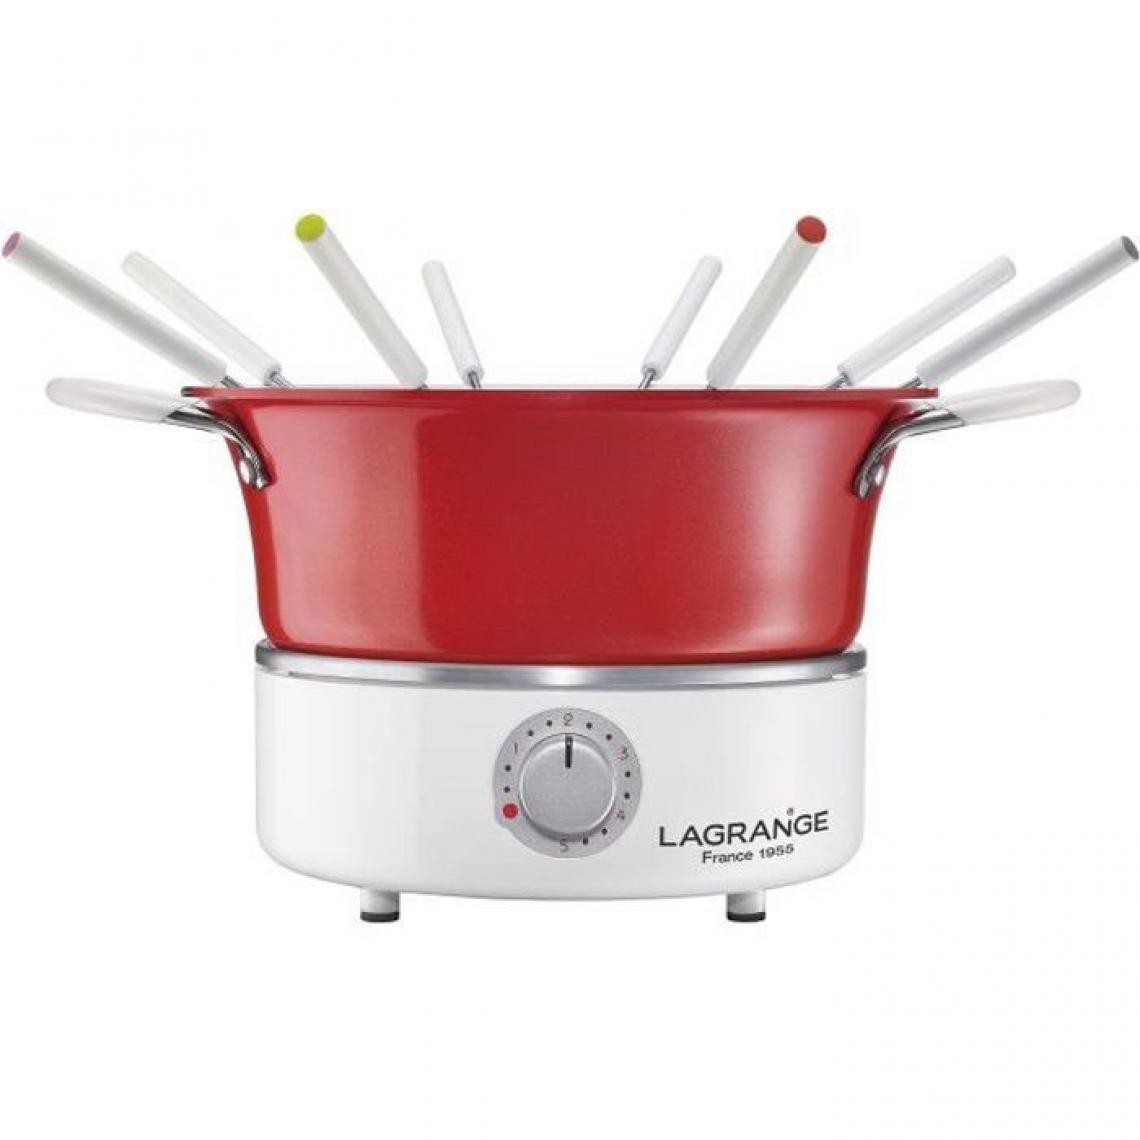 Lagrange - LAGRANGE Fondue festiv' avec ramequin - 900W - 8 fourchettes a fondue - Caquelon 1,2L - Appareil à fondue